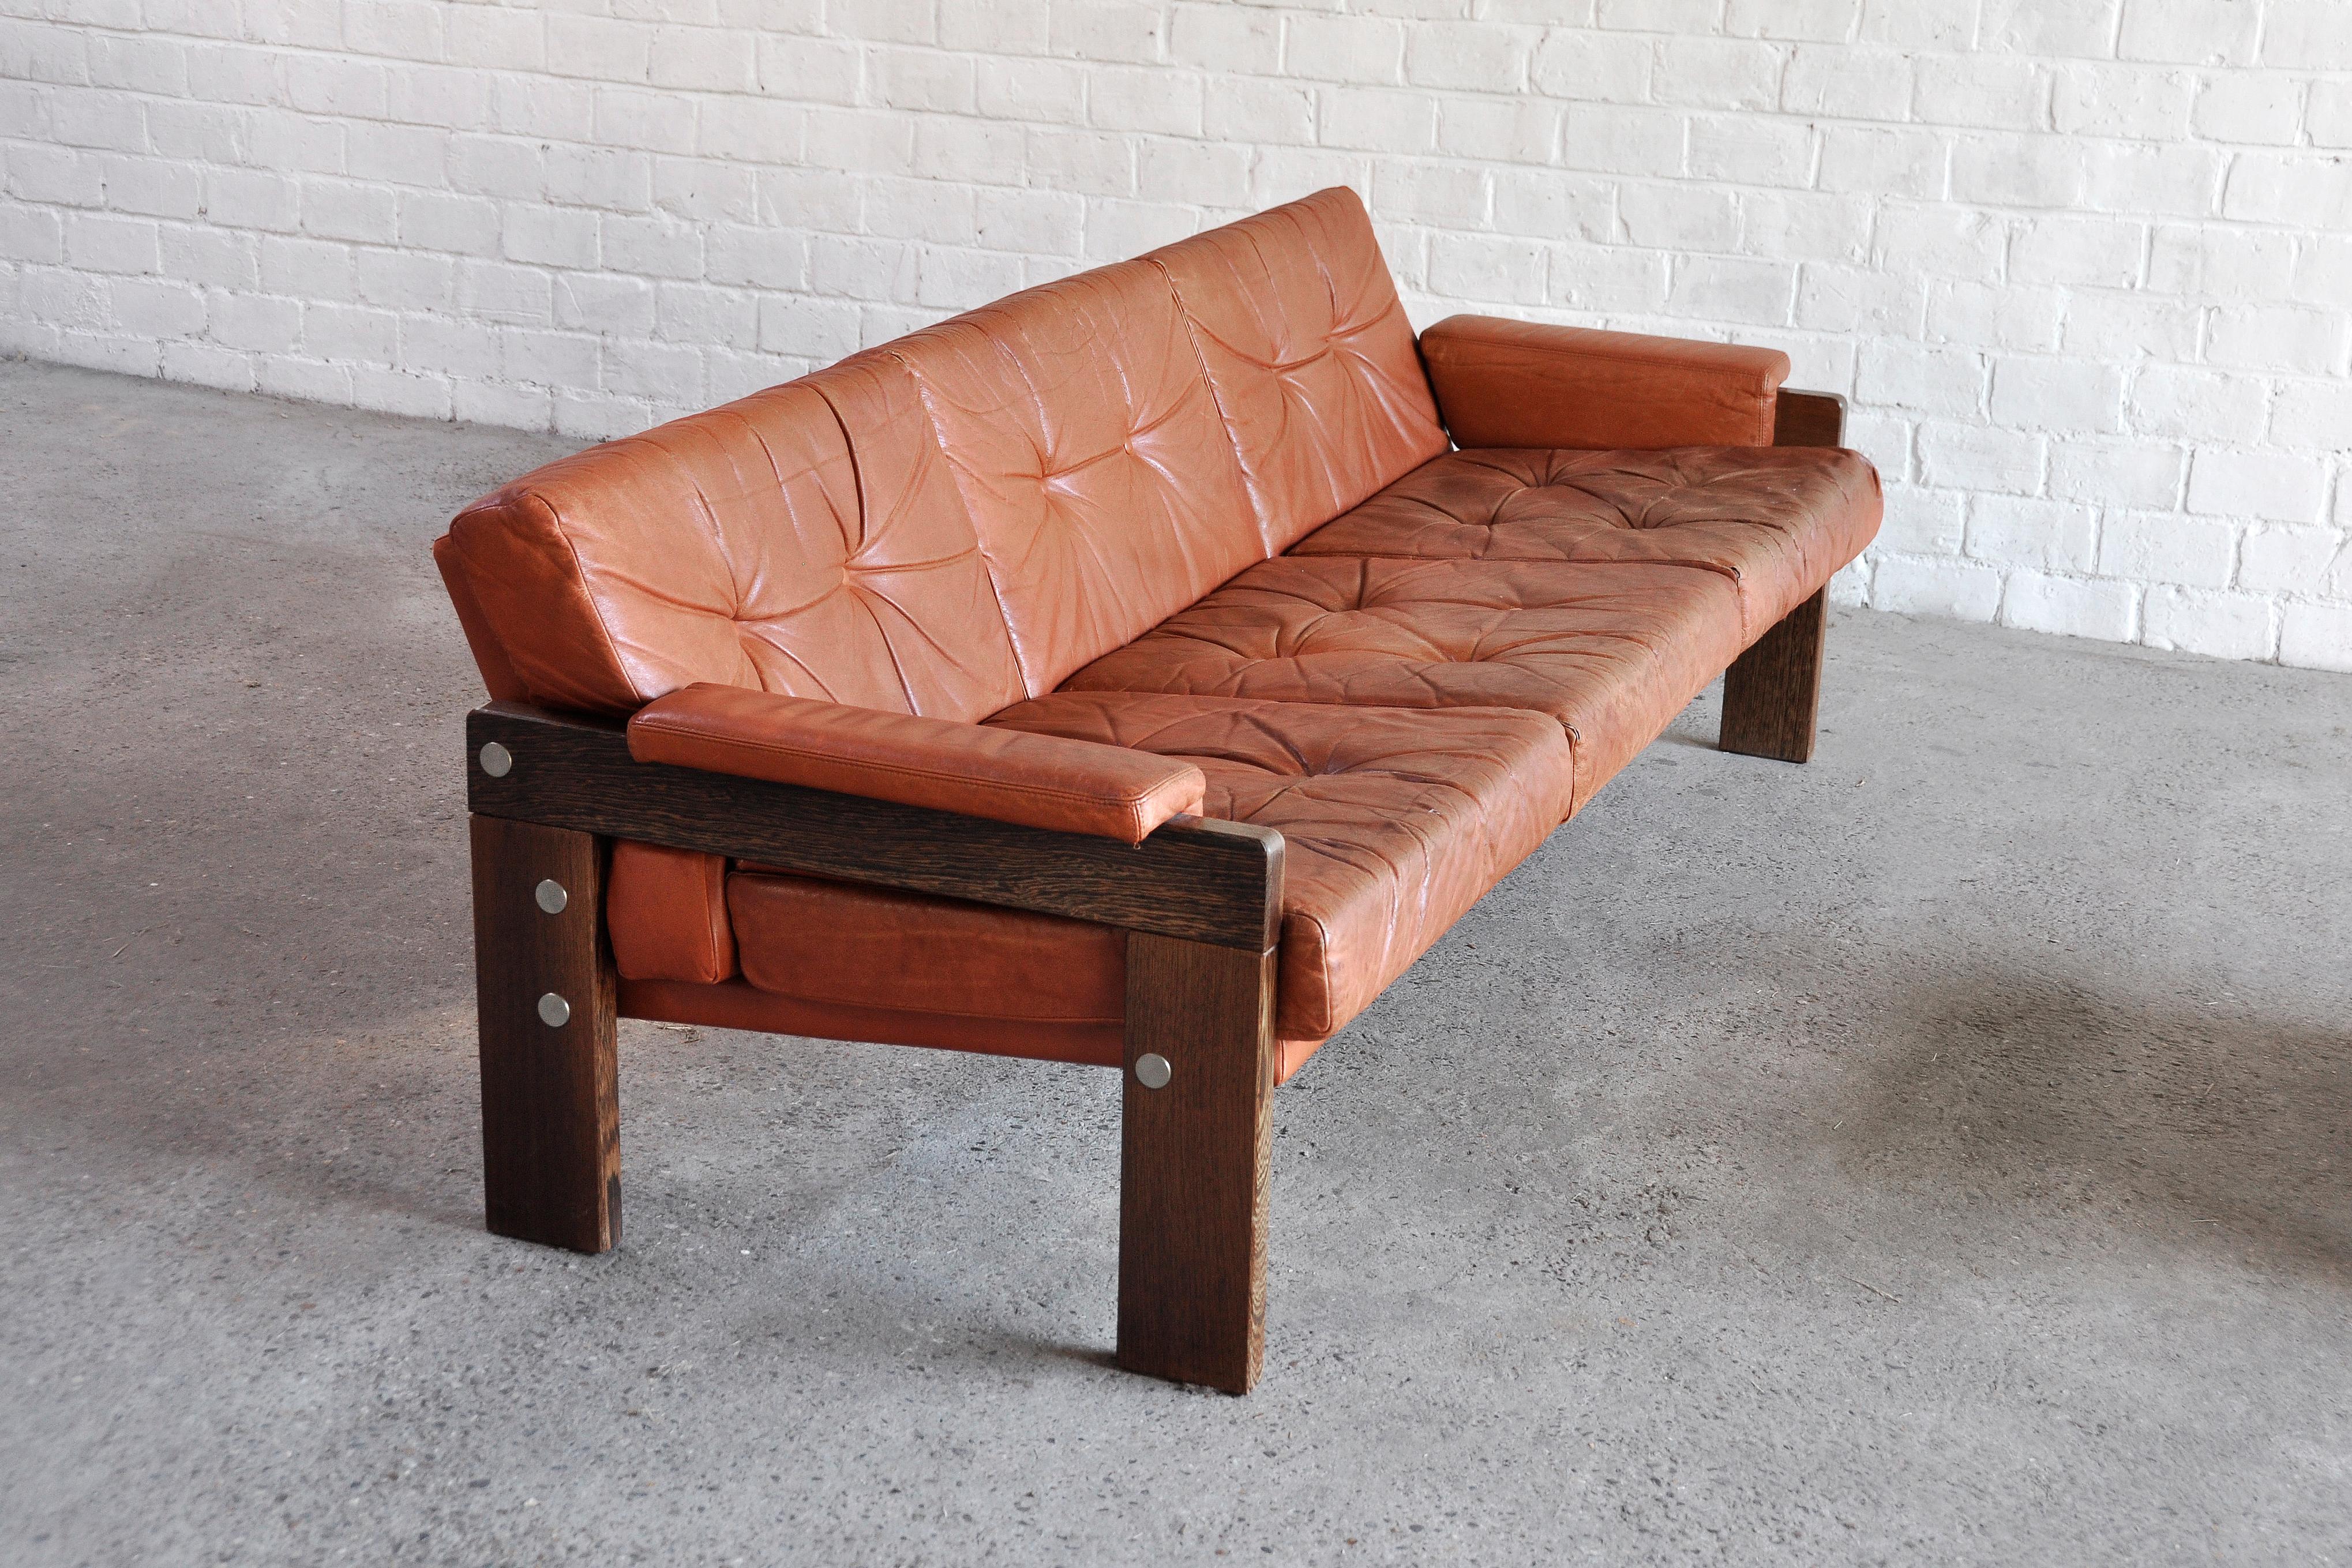 Dutch Vintage Wengé and Leather Modernist Sofa Set by Martin Visser for Spectrum, 1960